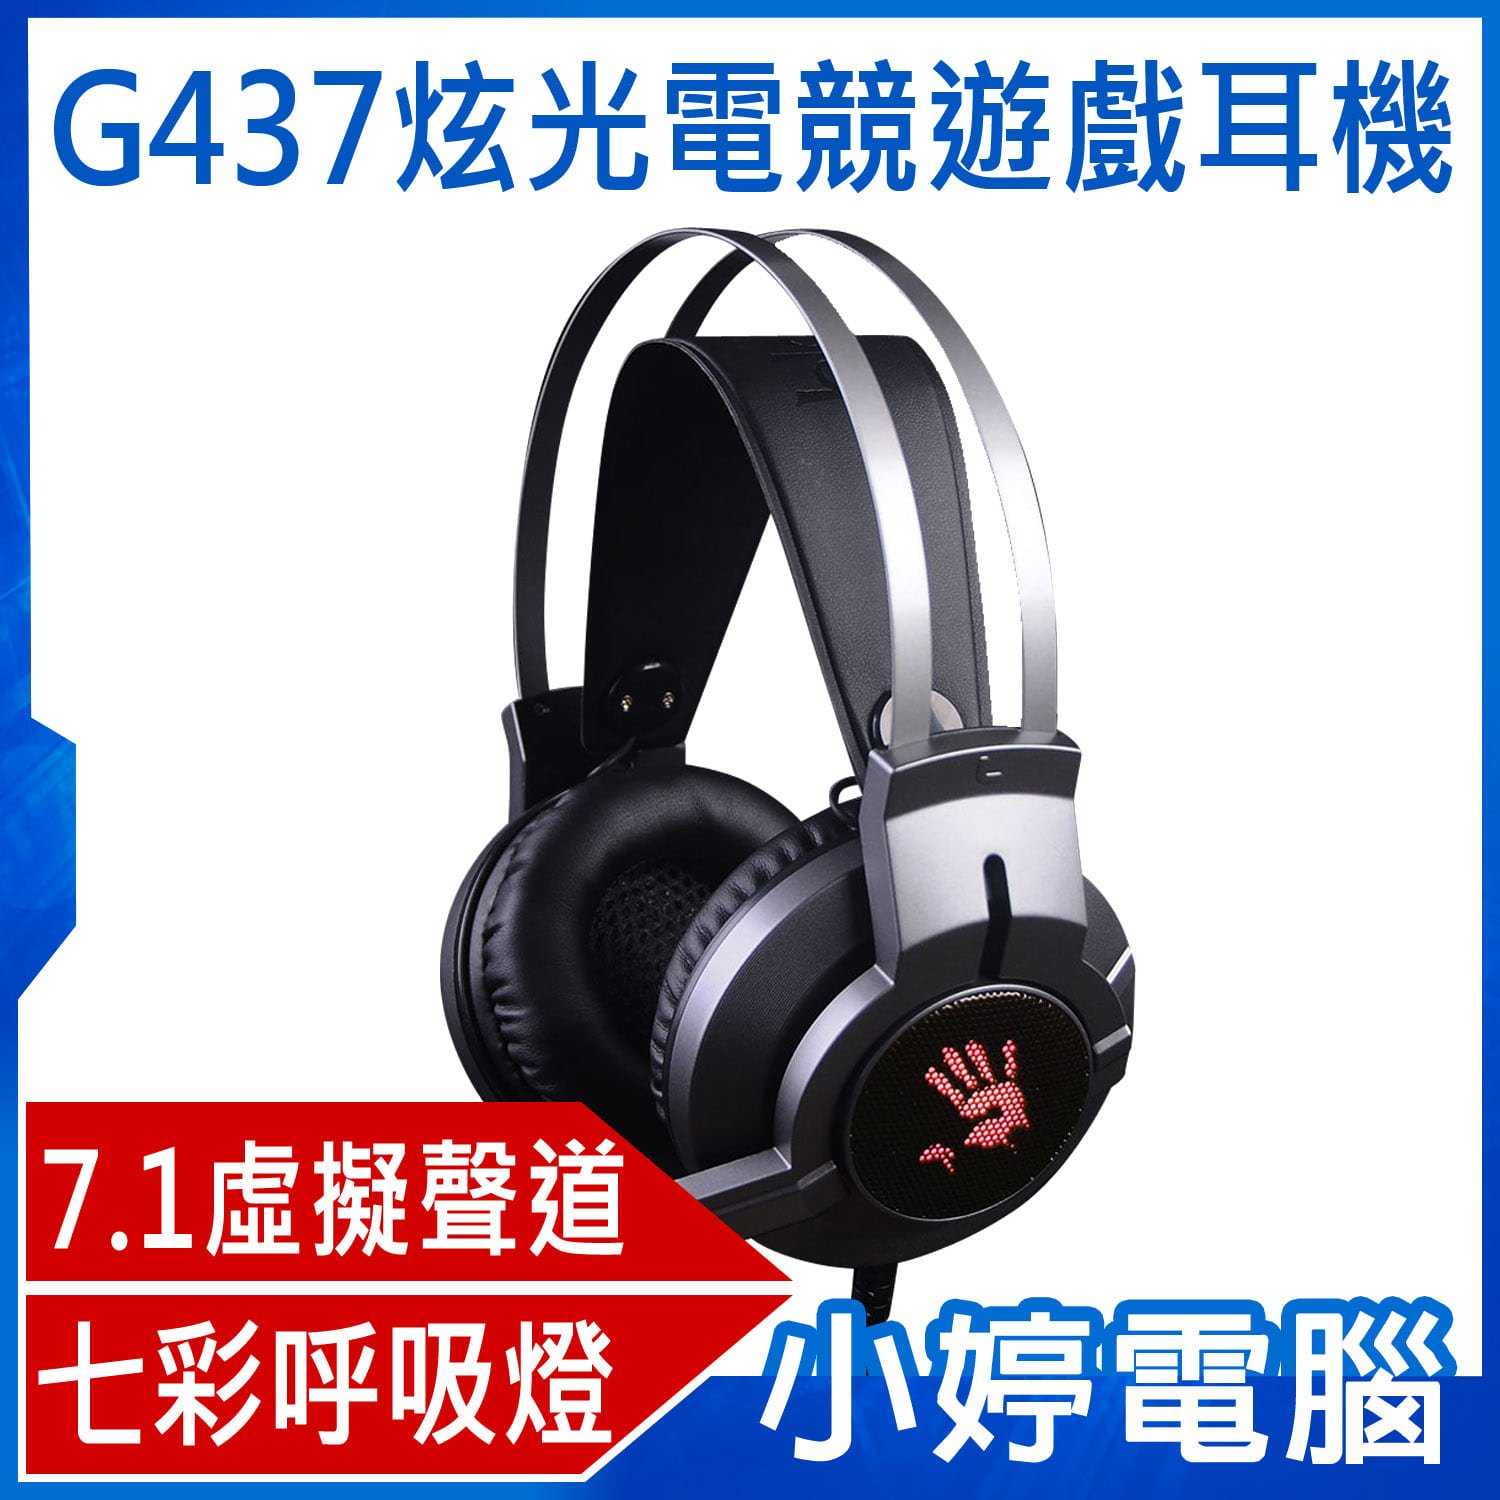 【小婷電腦】A4 雙飛燕 bloody G437炫光電競遊戲耳機 (7.1 虛擬聲道)